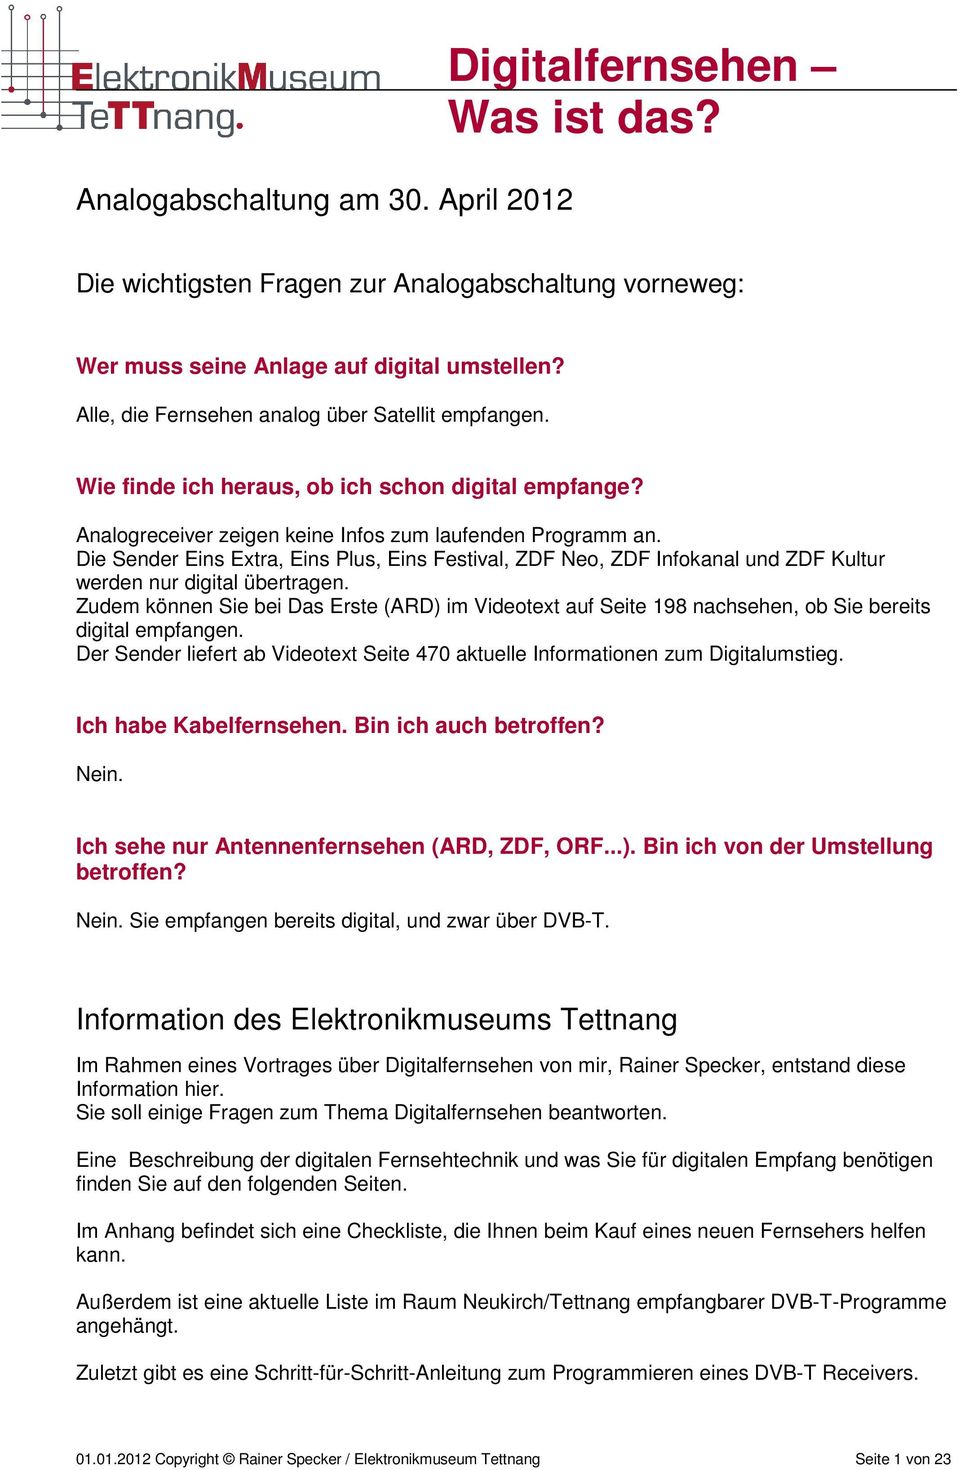 Die Sender Eins Extra, Eins Plus, Eins Festival, ZDF Neo, ZDF Infokanal und ZDF Kultur werden nur digital übertragen.